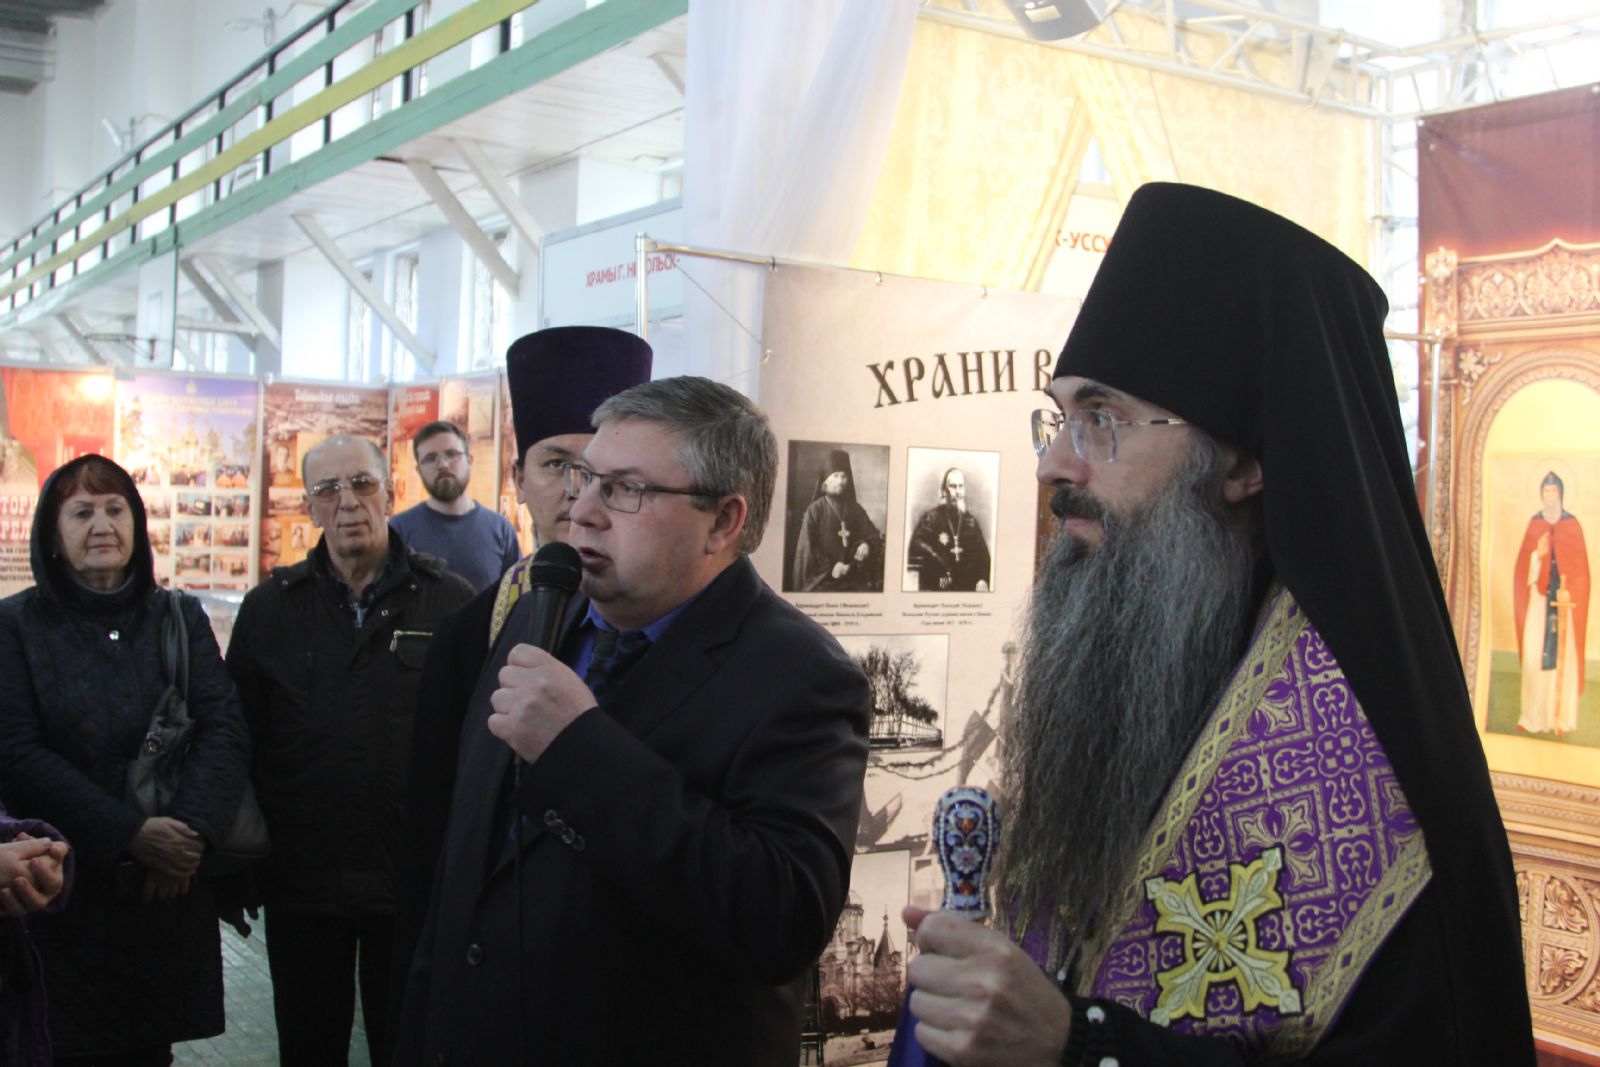 Епископ Иннокентий совершил молебен и объявил о закрытии православной выставки